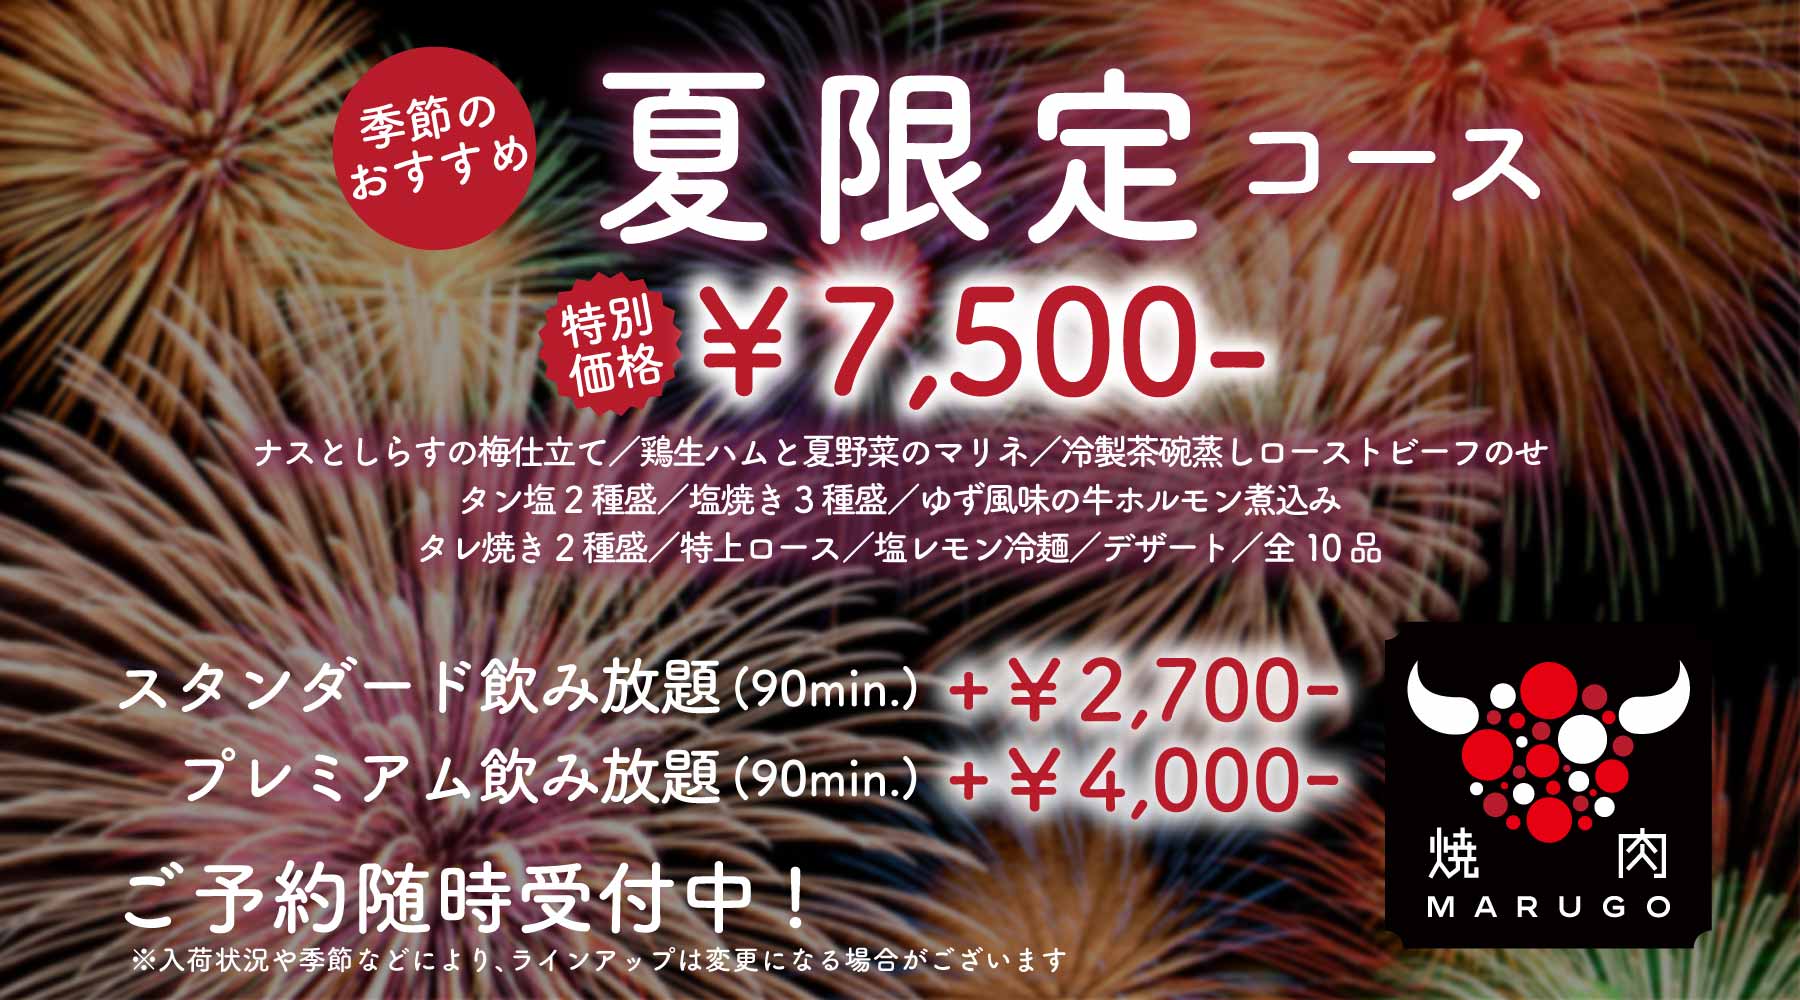 おすすめ「季節限定コース」¥7,500-